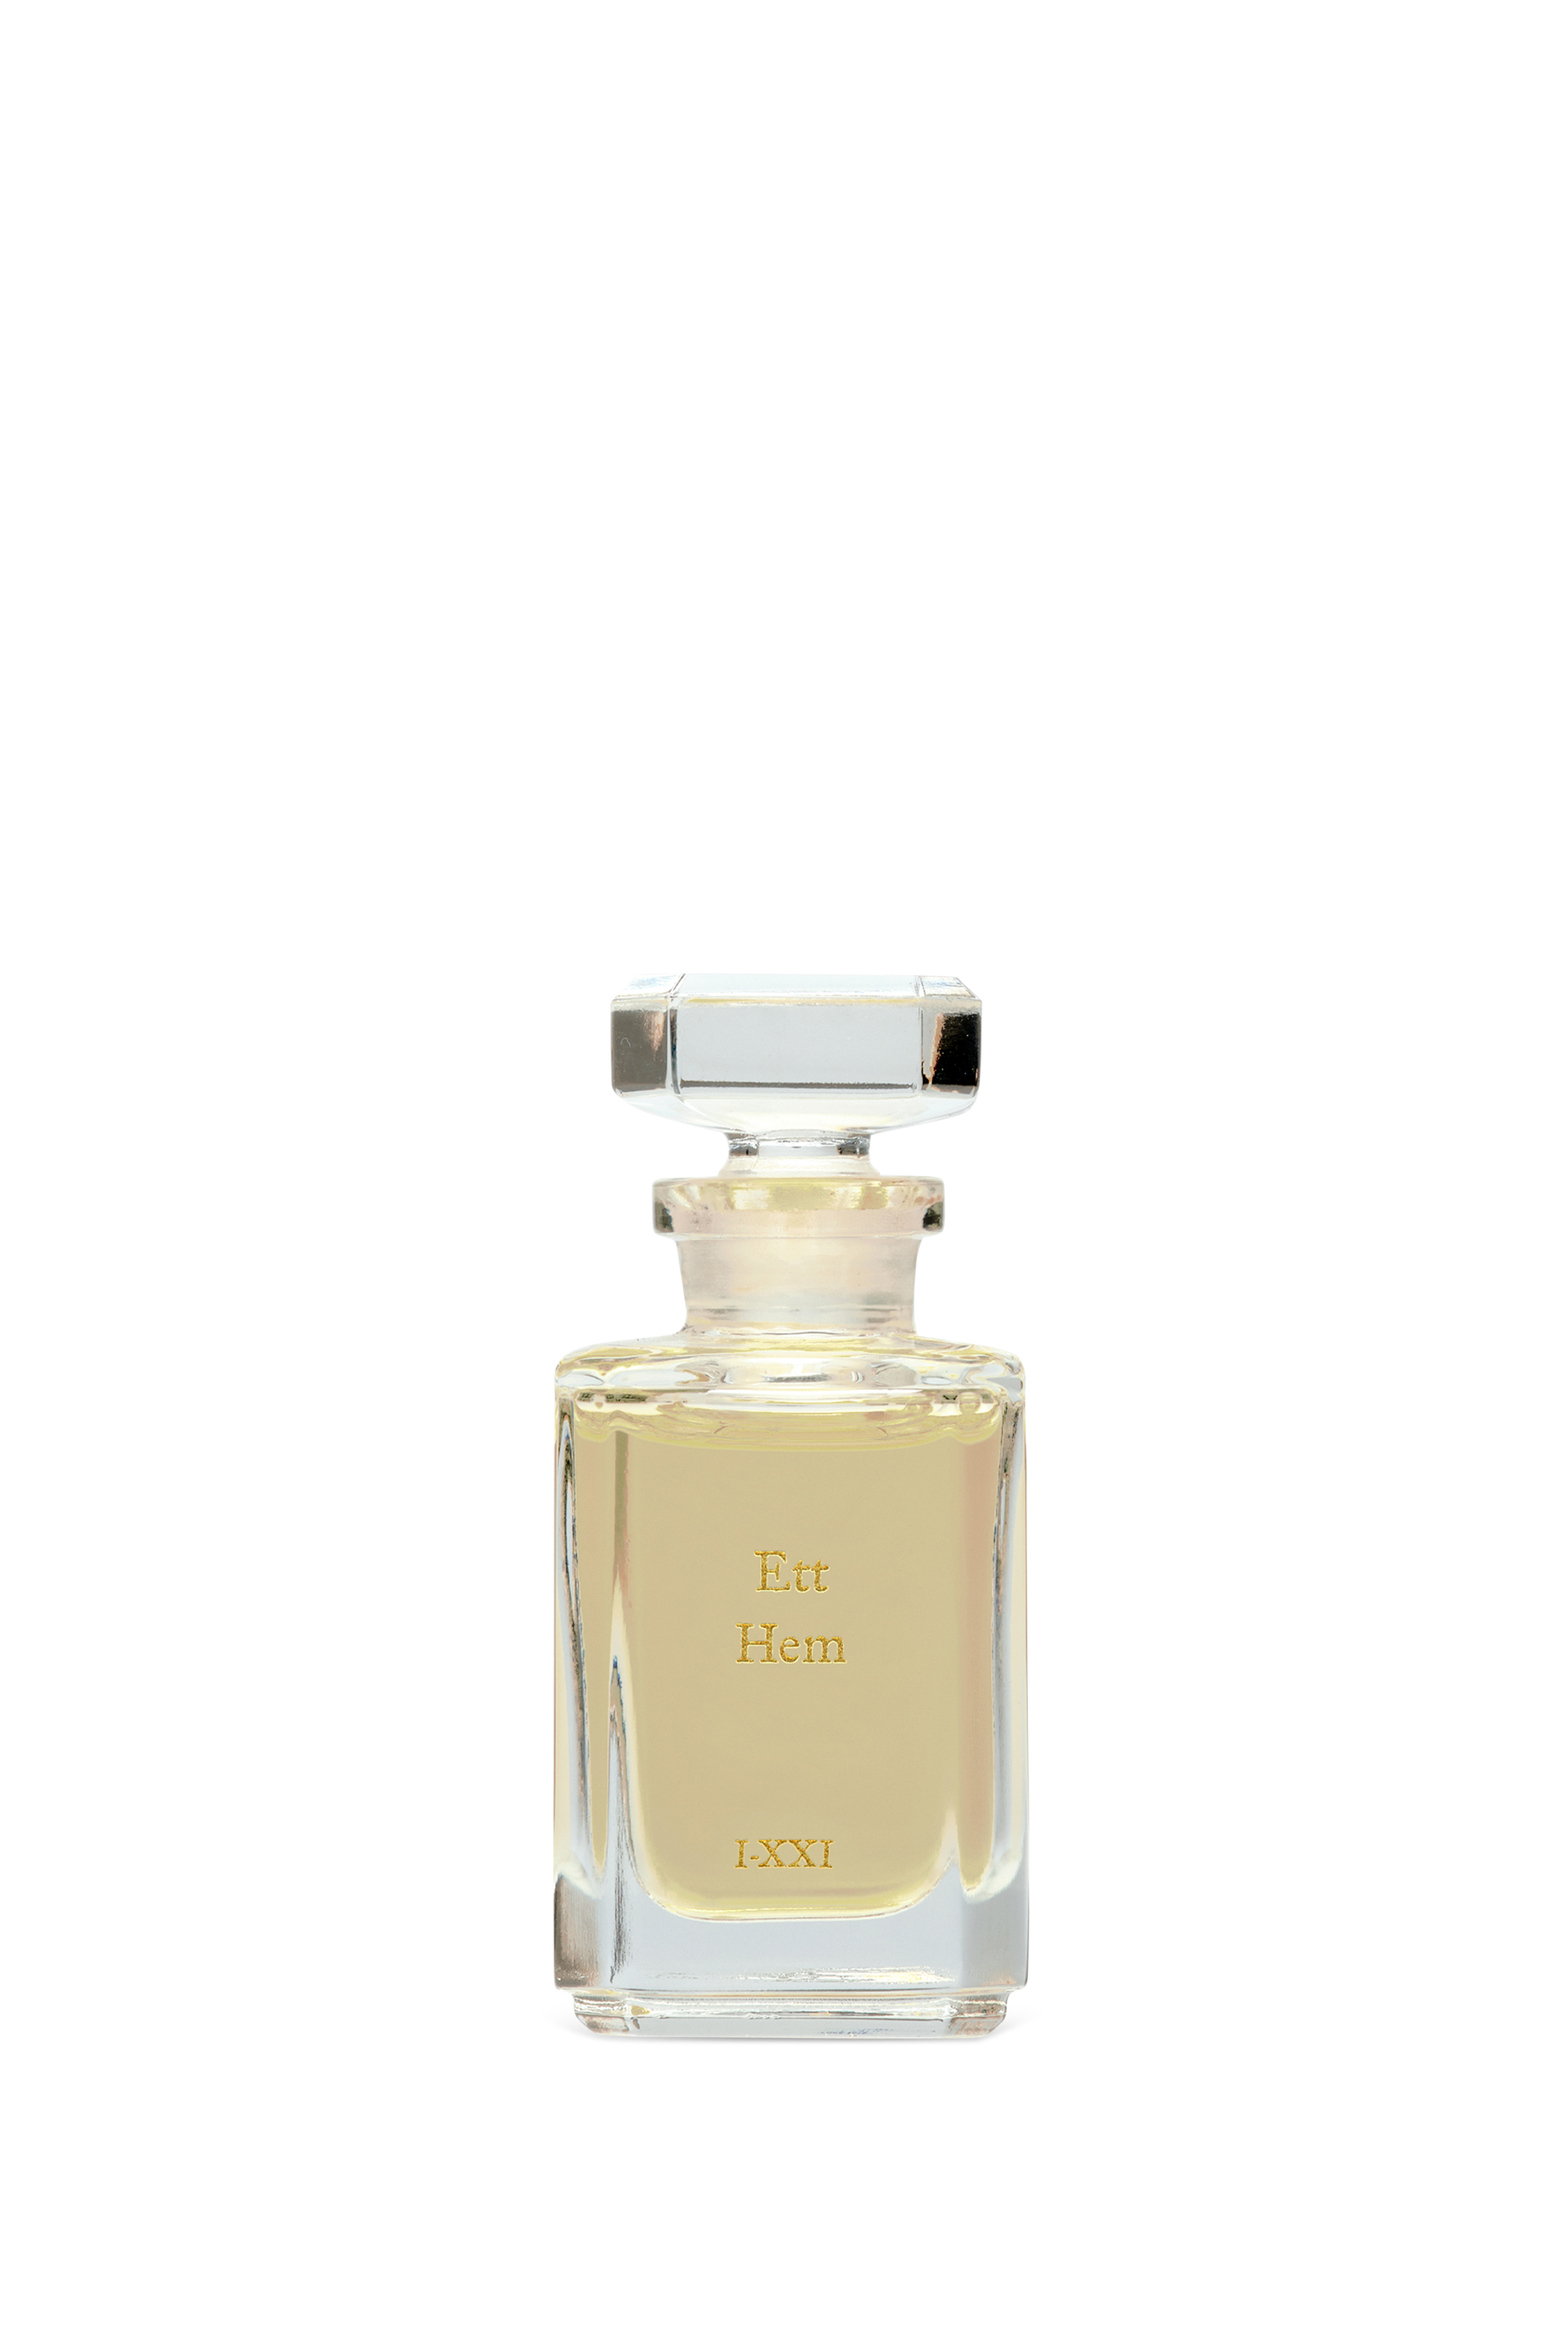 Buy Ett Hem Perfume Oil for SAR 1532.00 | BloomingDales SA